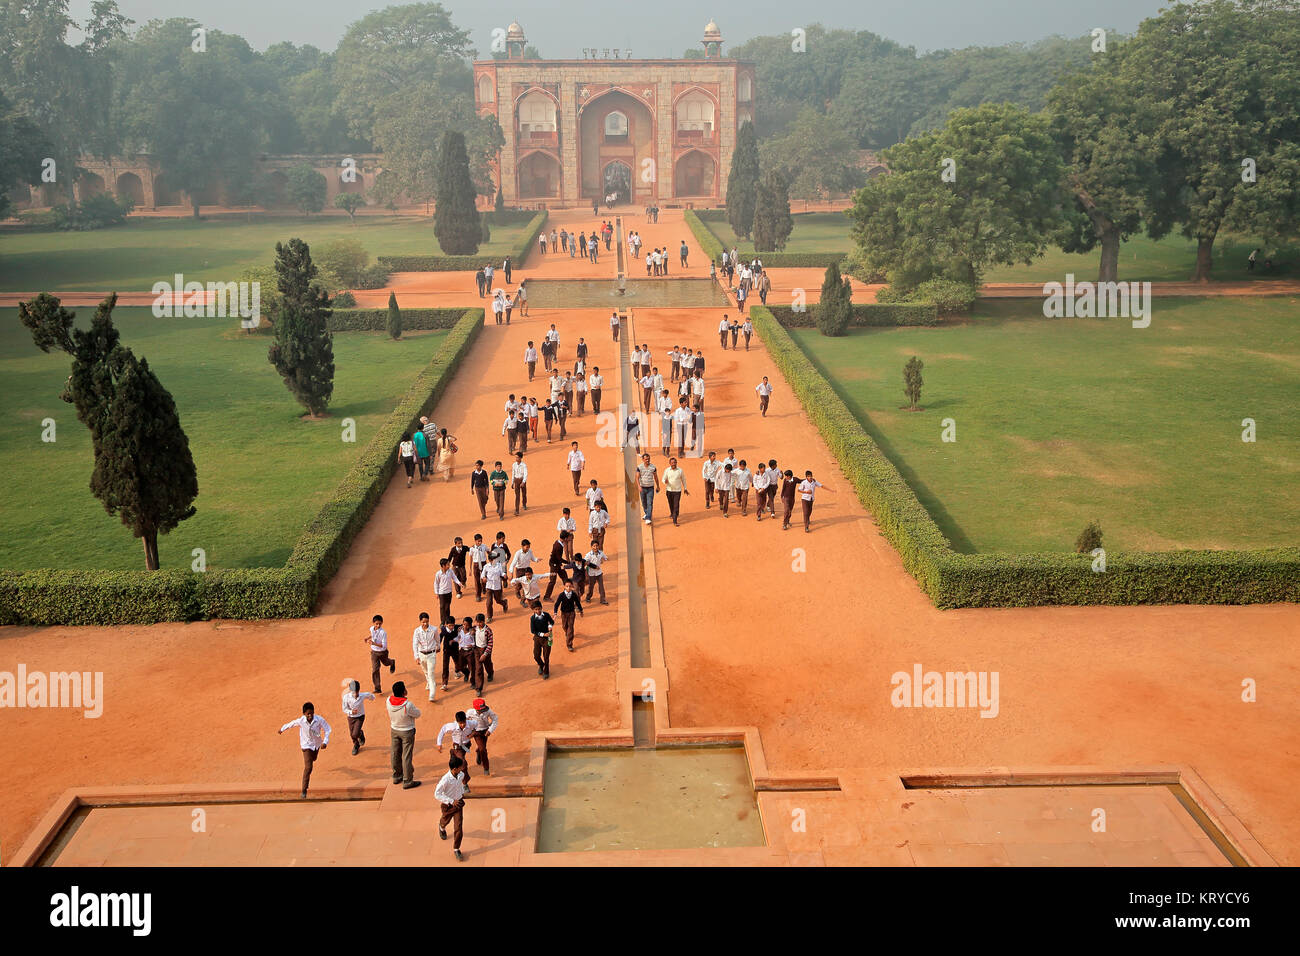 DELHI, India - 23 novembre 2015: Visitatori all'entrata del centro storico Humayuns tomb e giardino - un sito patrimonio mondiale dell'UNESCO Foto Stock